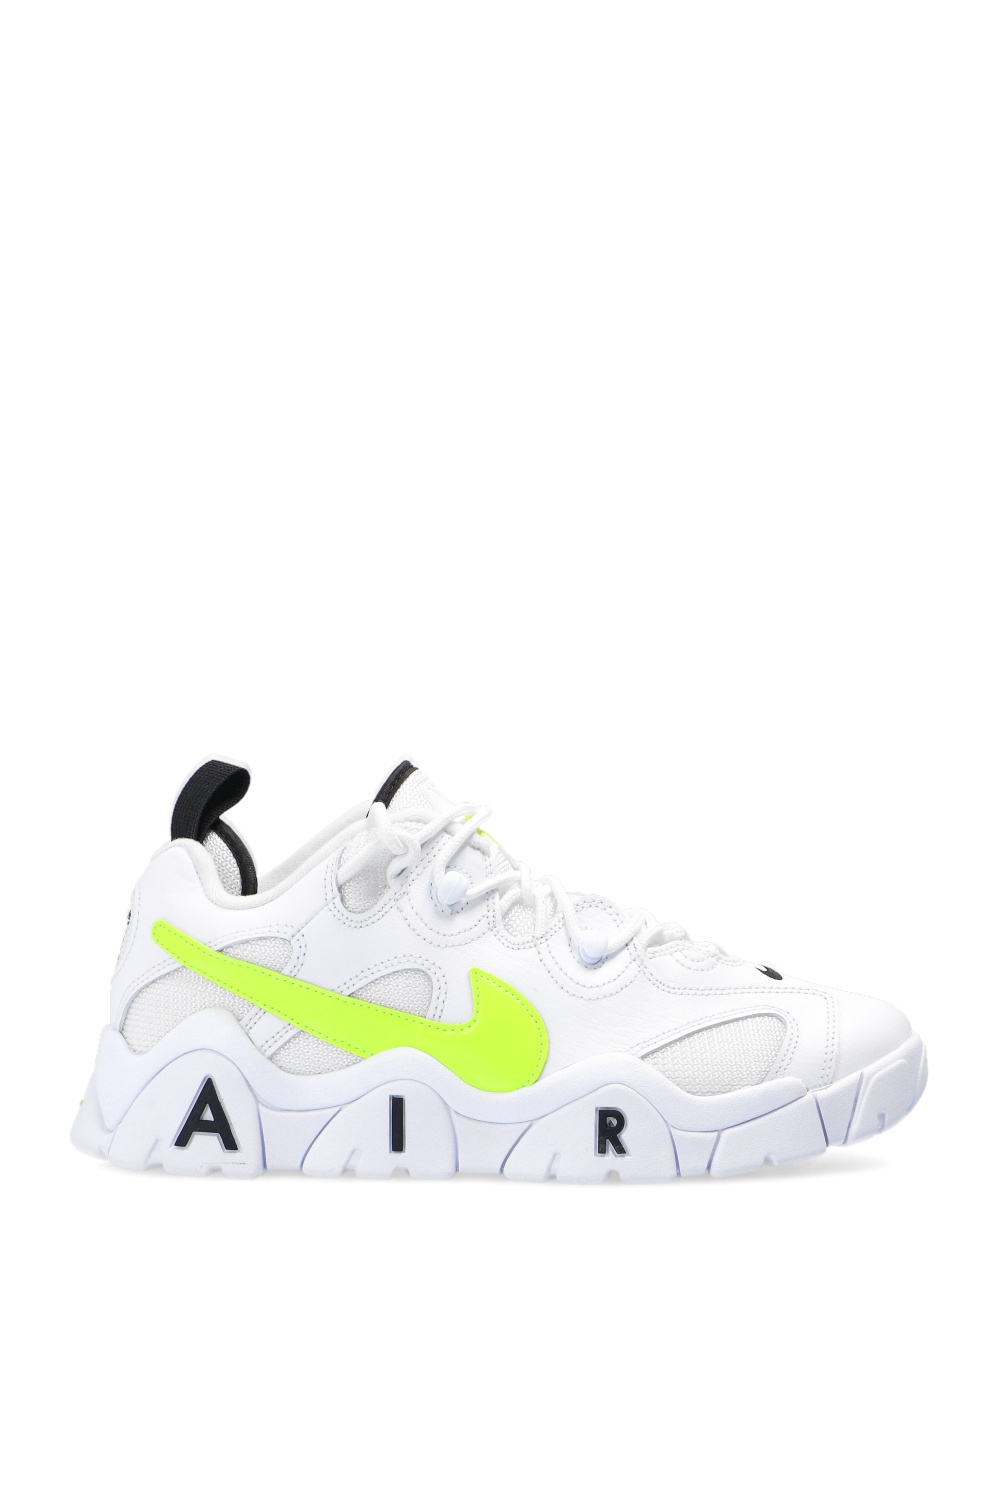 Air Barrage Low' sneakers Nike - Vitkac 